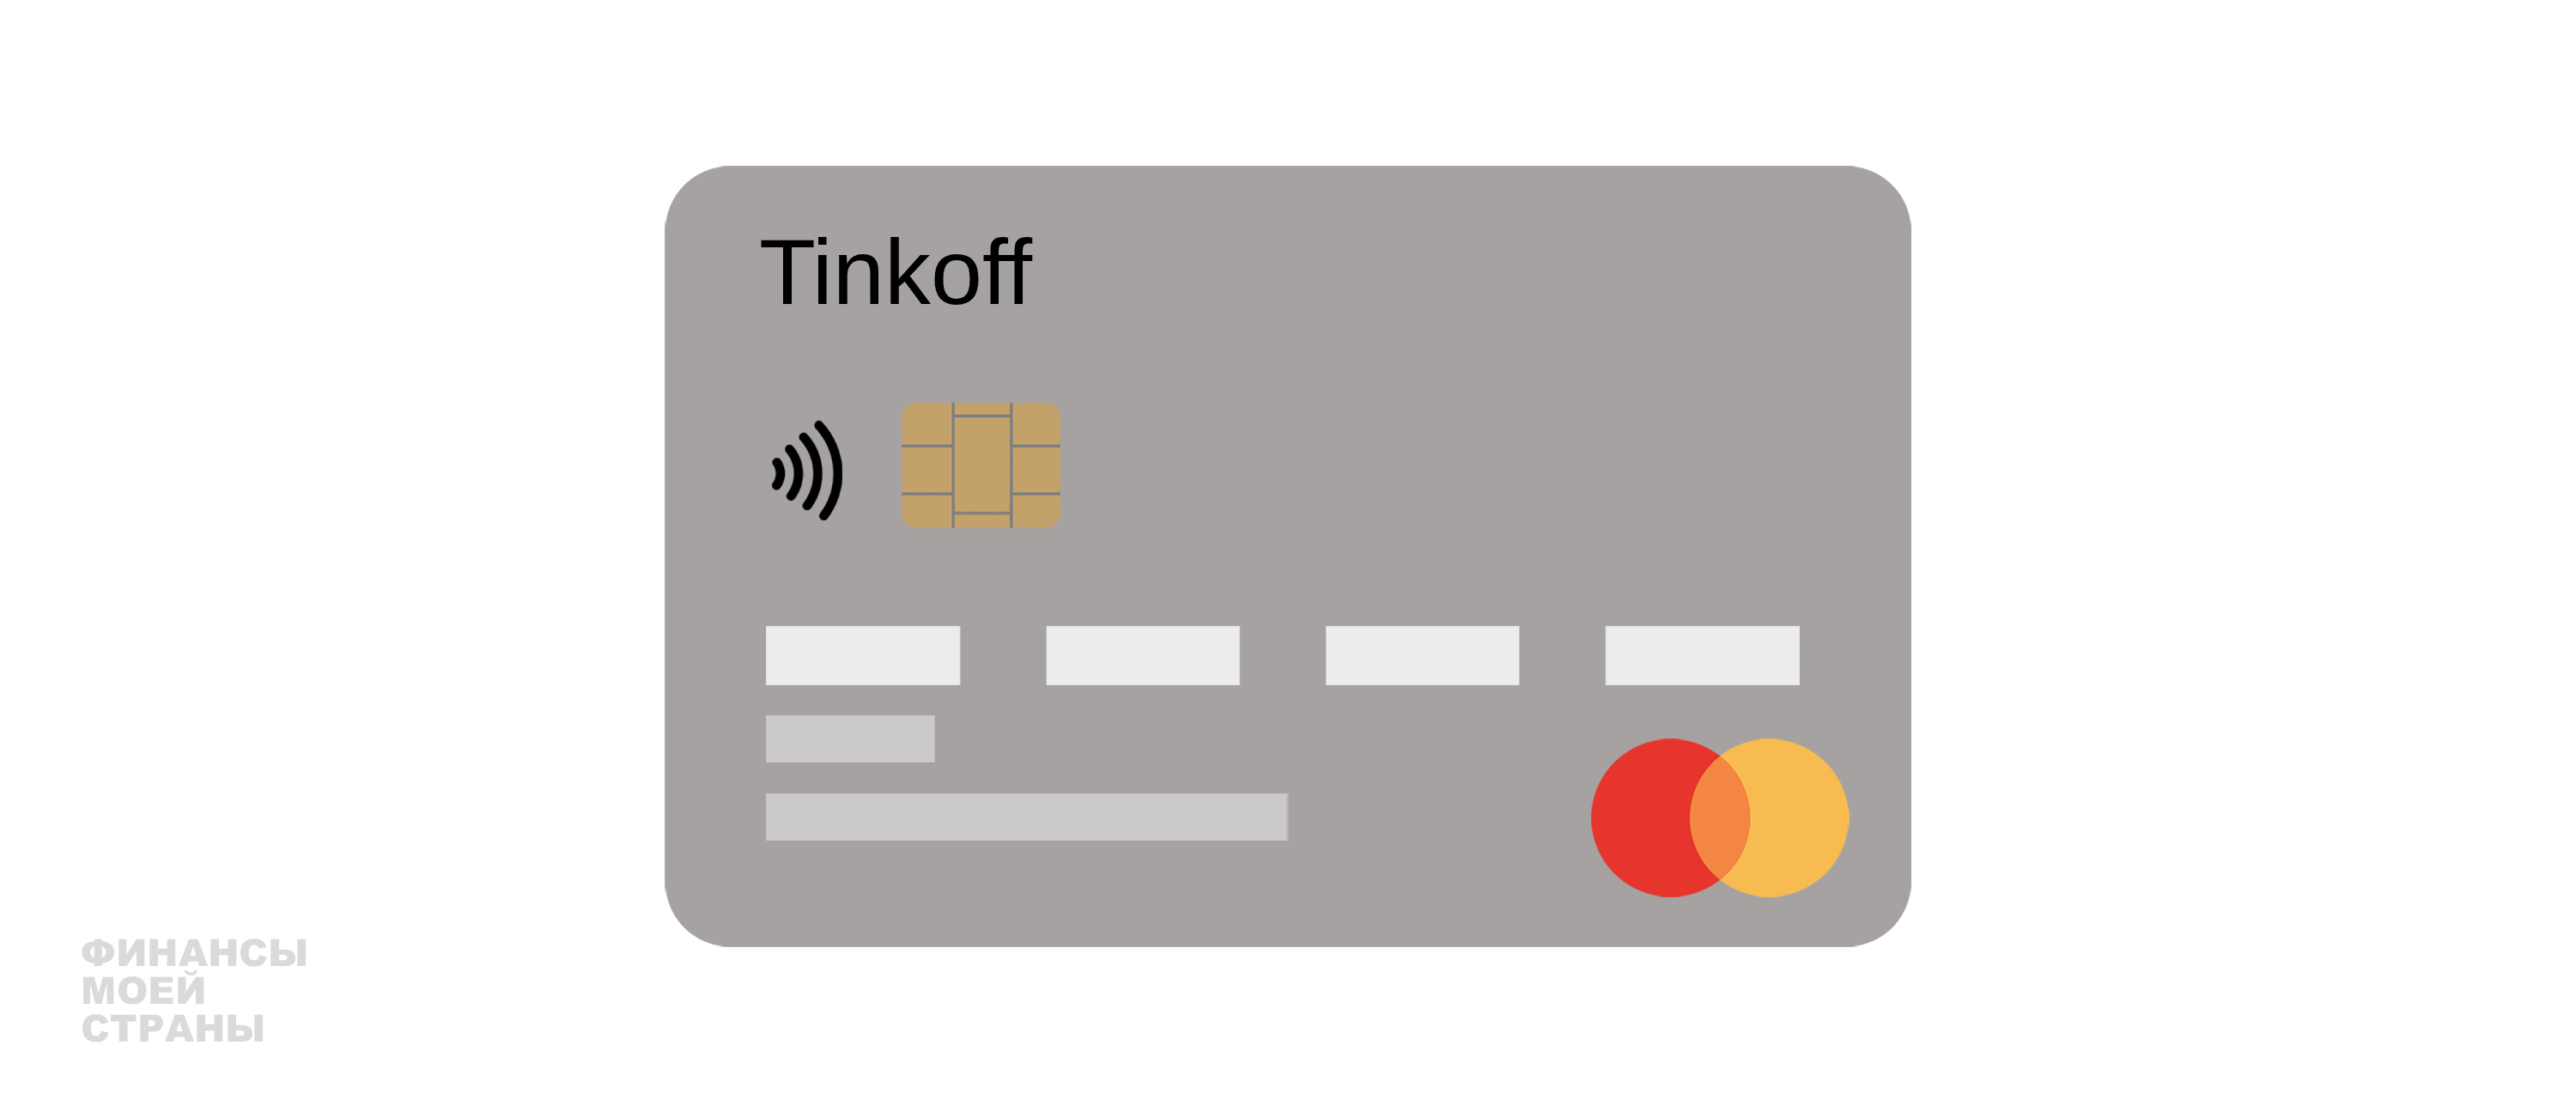 Кредитная карта платинум условия пользования. Tinkoff золото.